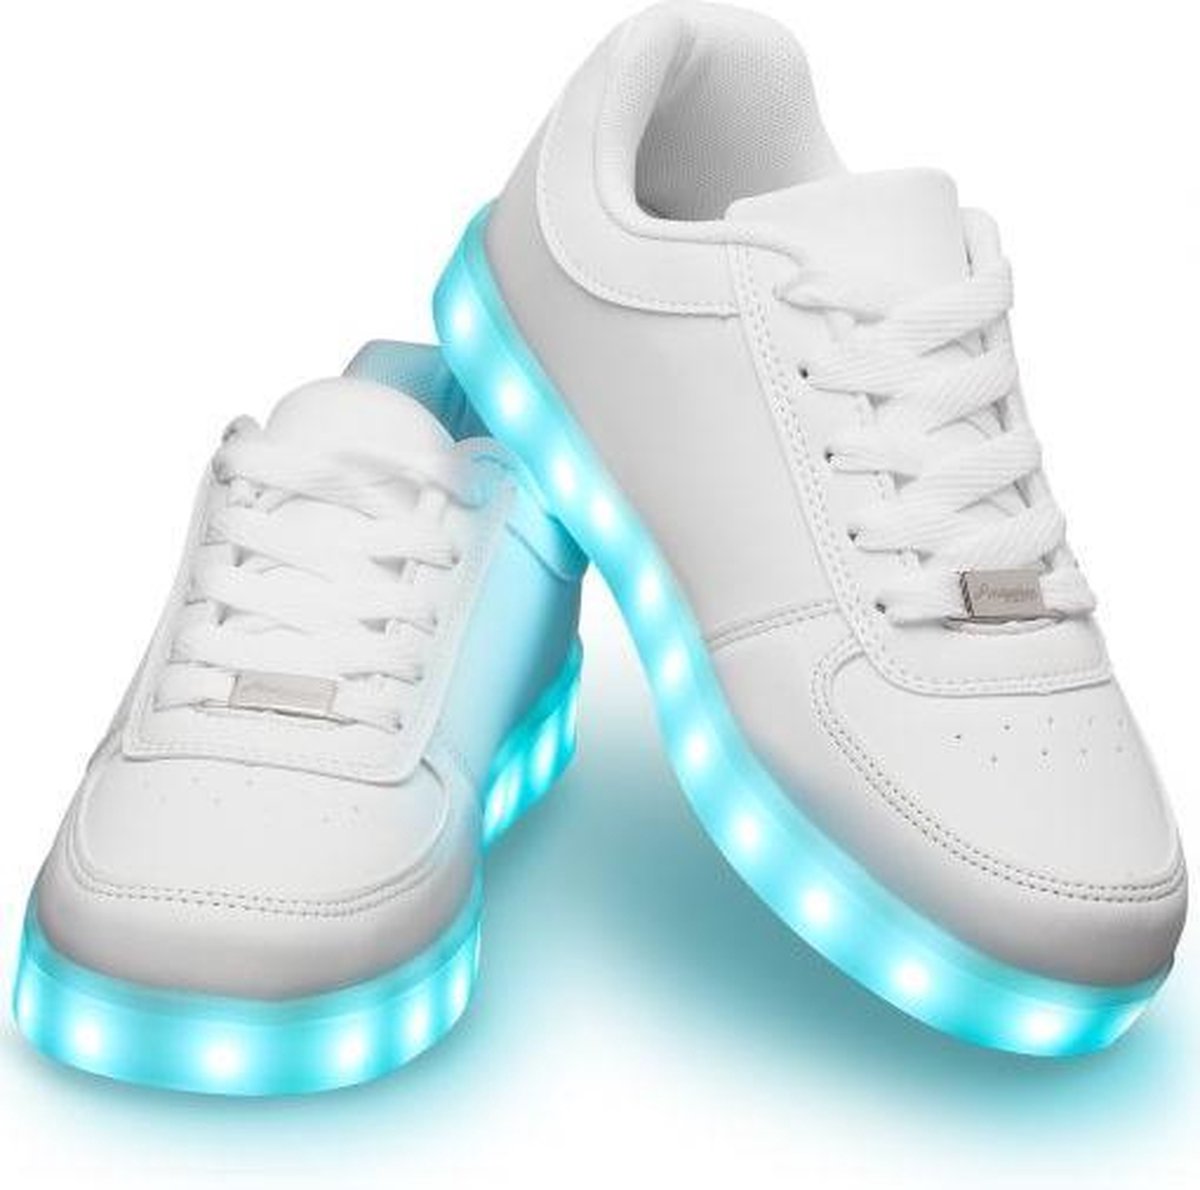 Schoenen met lichtjes - Lichtgevende led schoenen - Wit - Maat 46